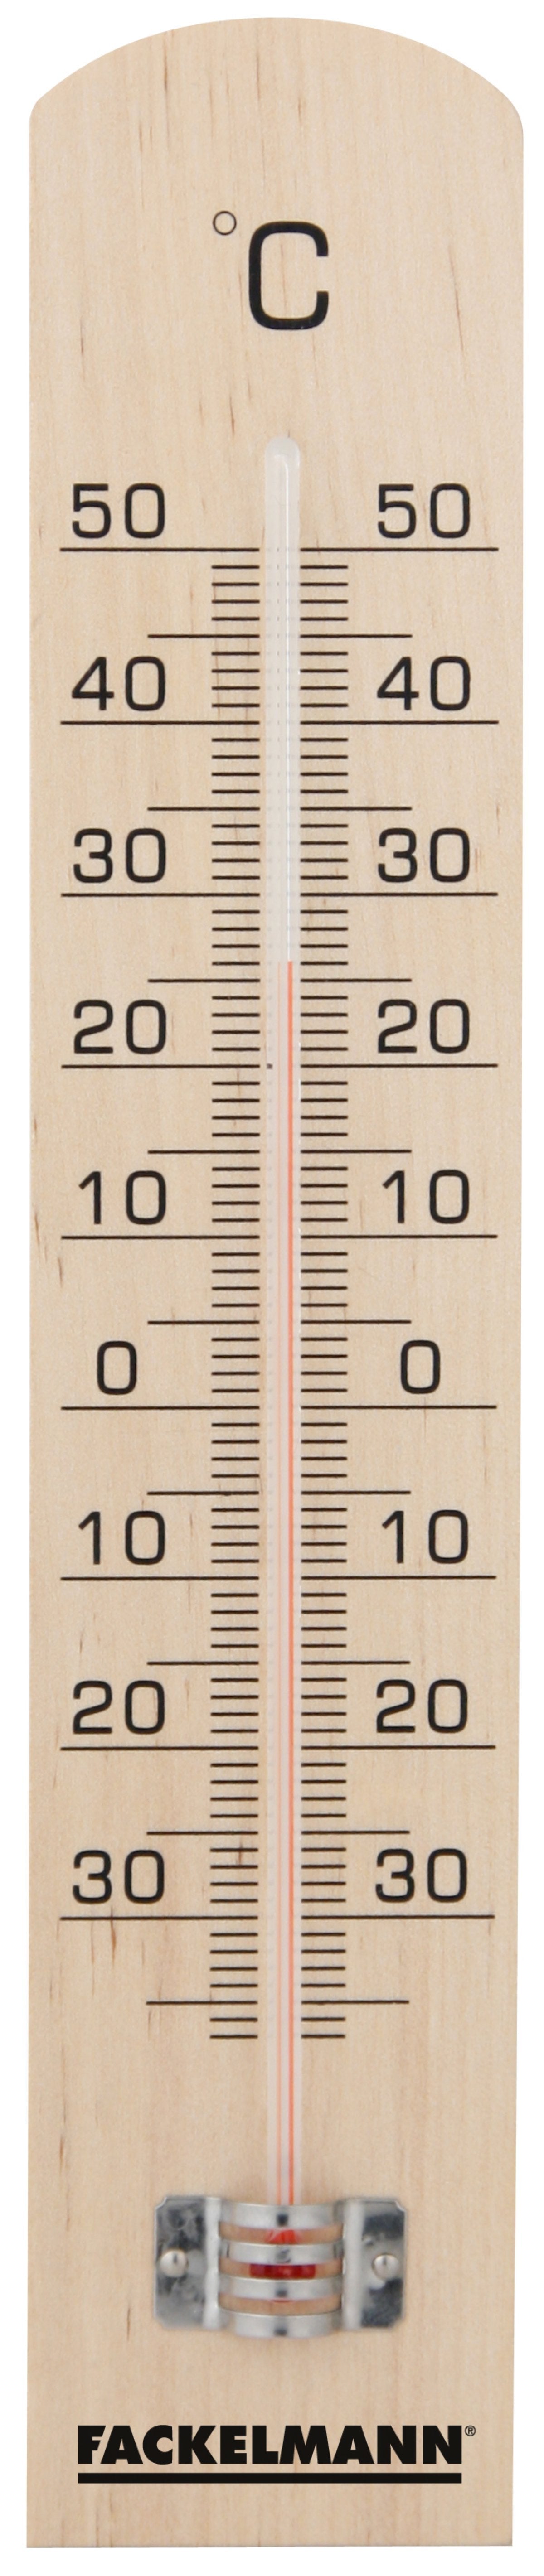 Fackelmann Wooden Thermometer